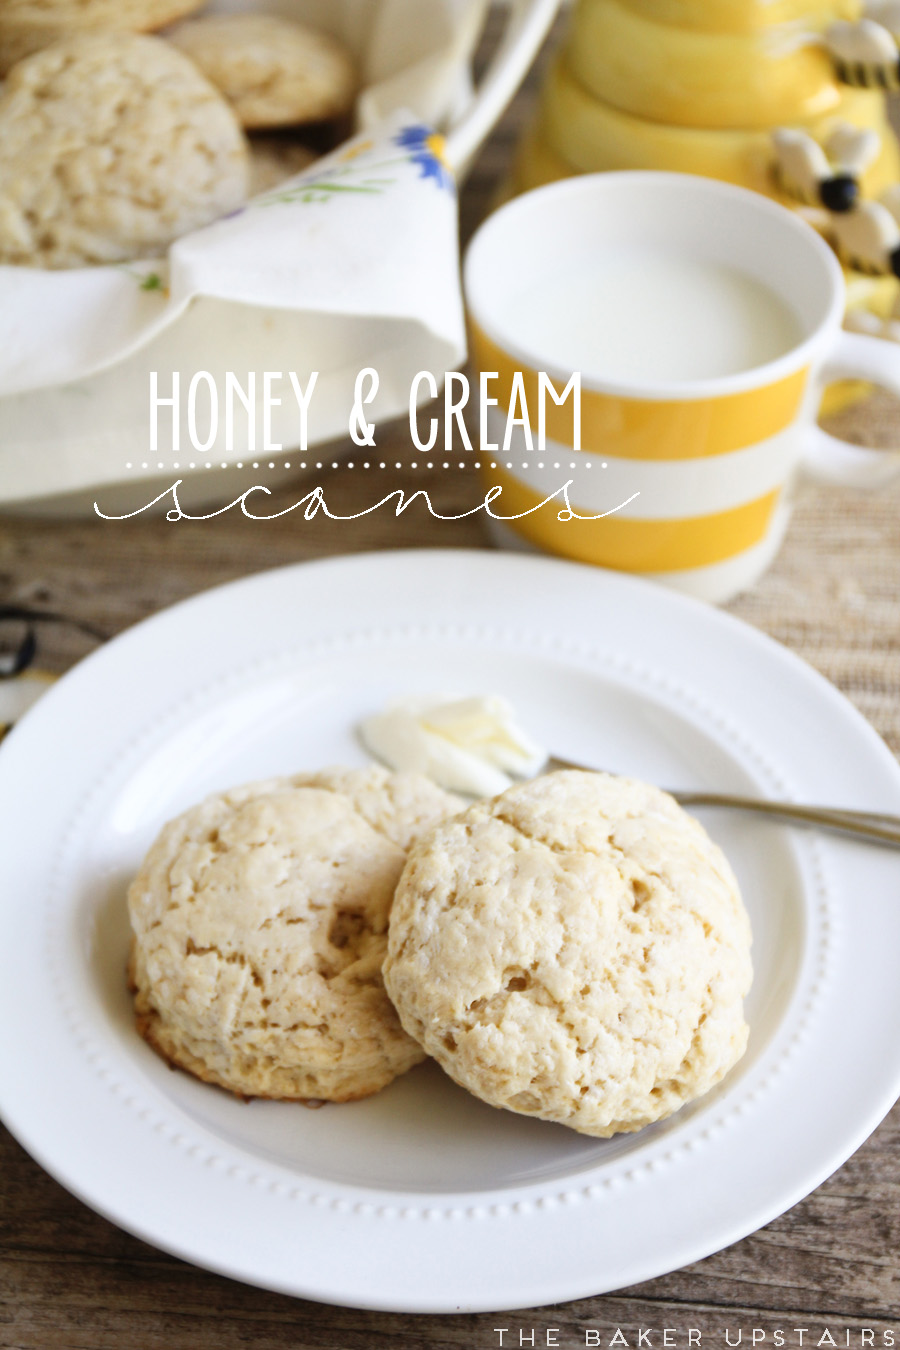 The Baker Upstairs: honey and cream scones